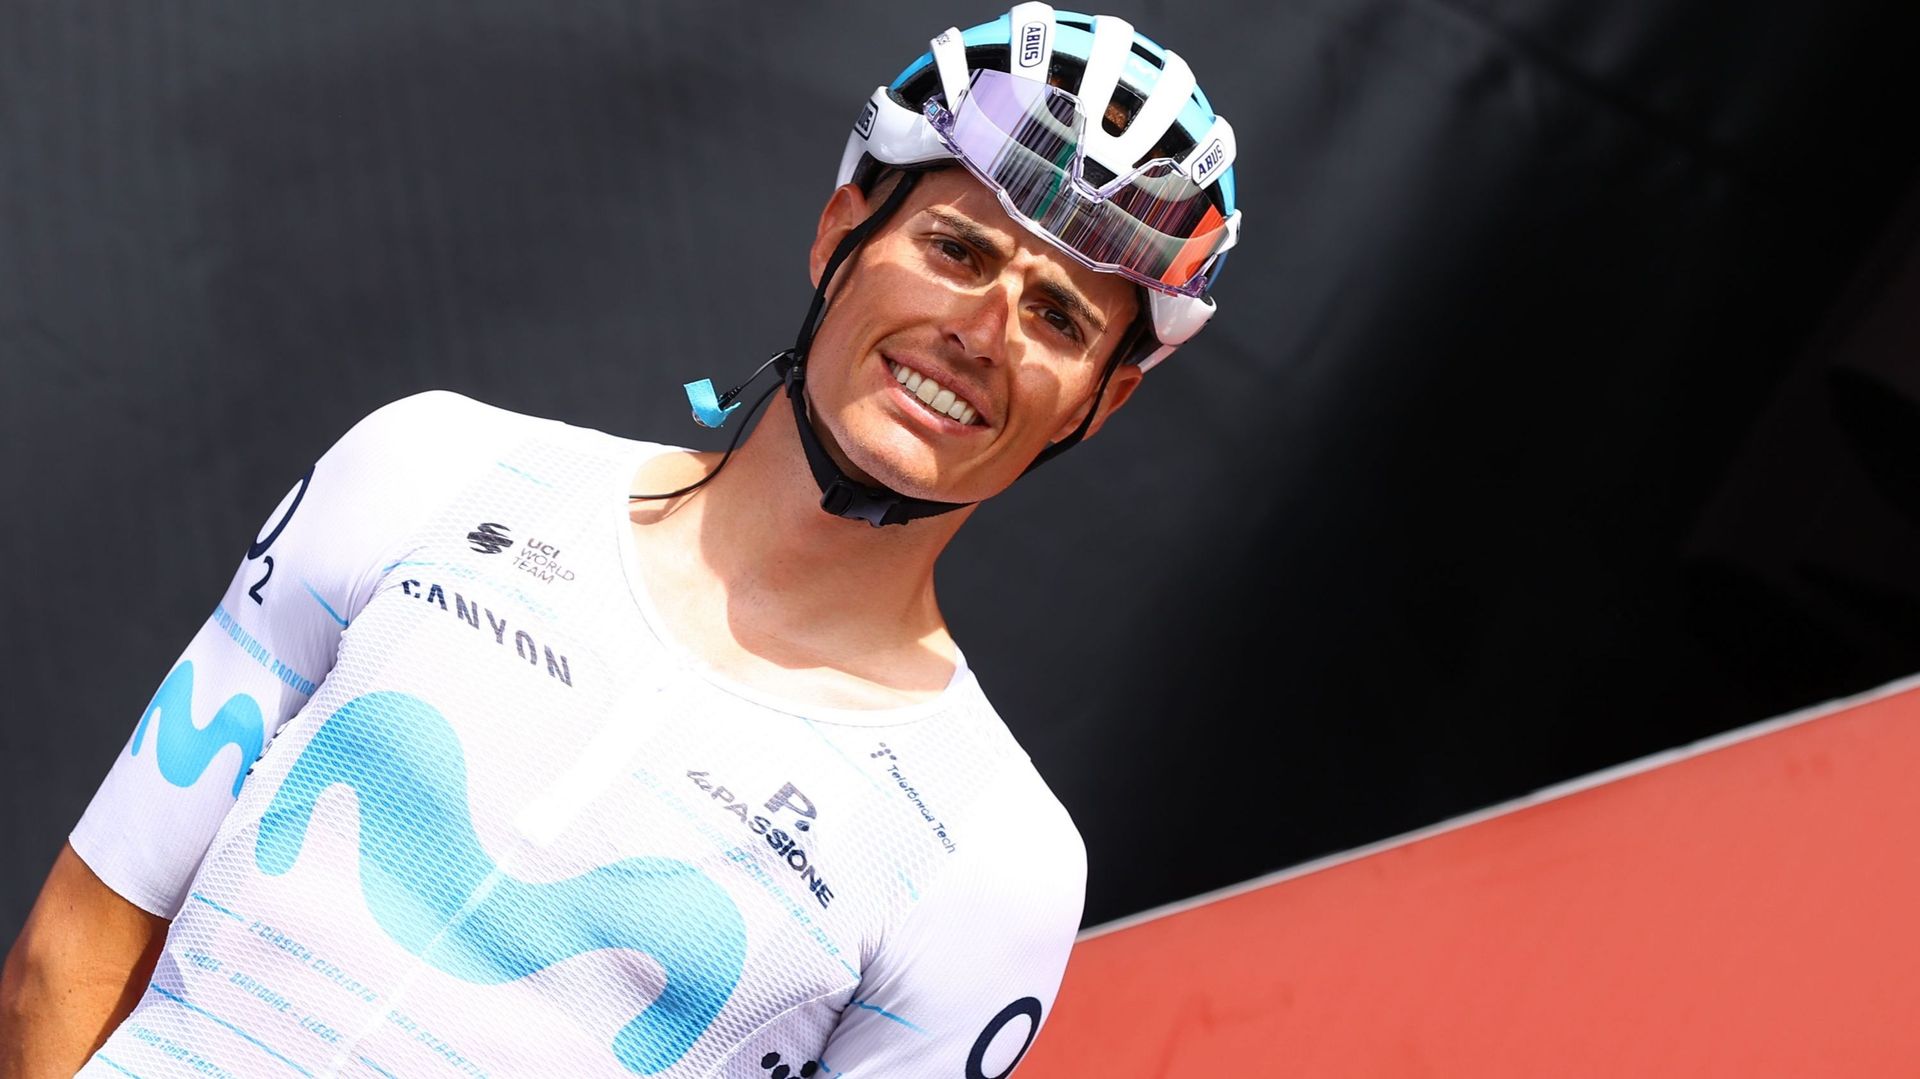 La 2e place d’Enric Mas sur la Vuelta a donné une grosse bouffée d’oxygène à Movistar.